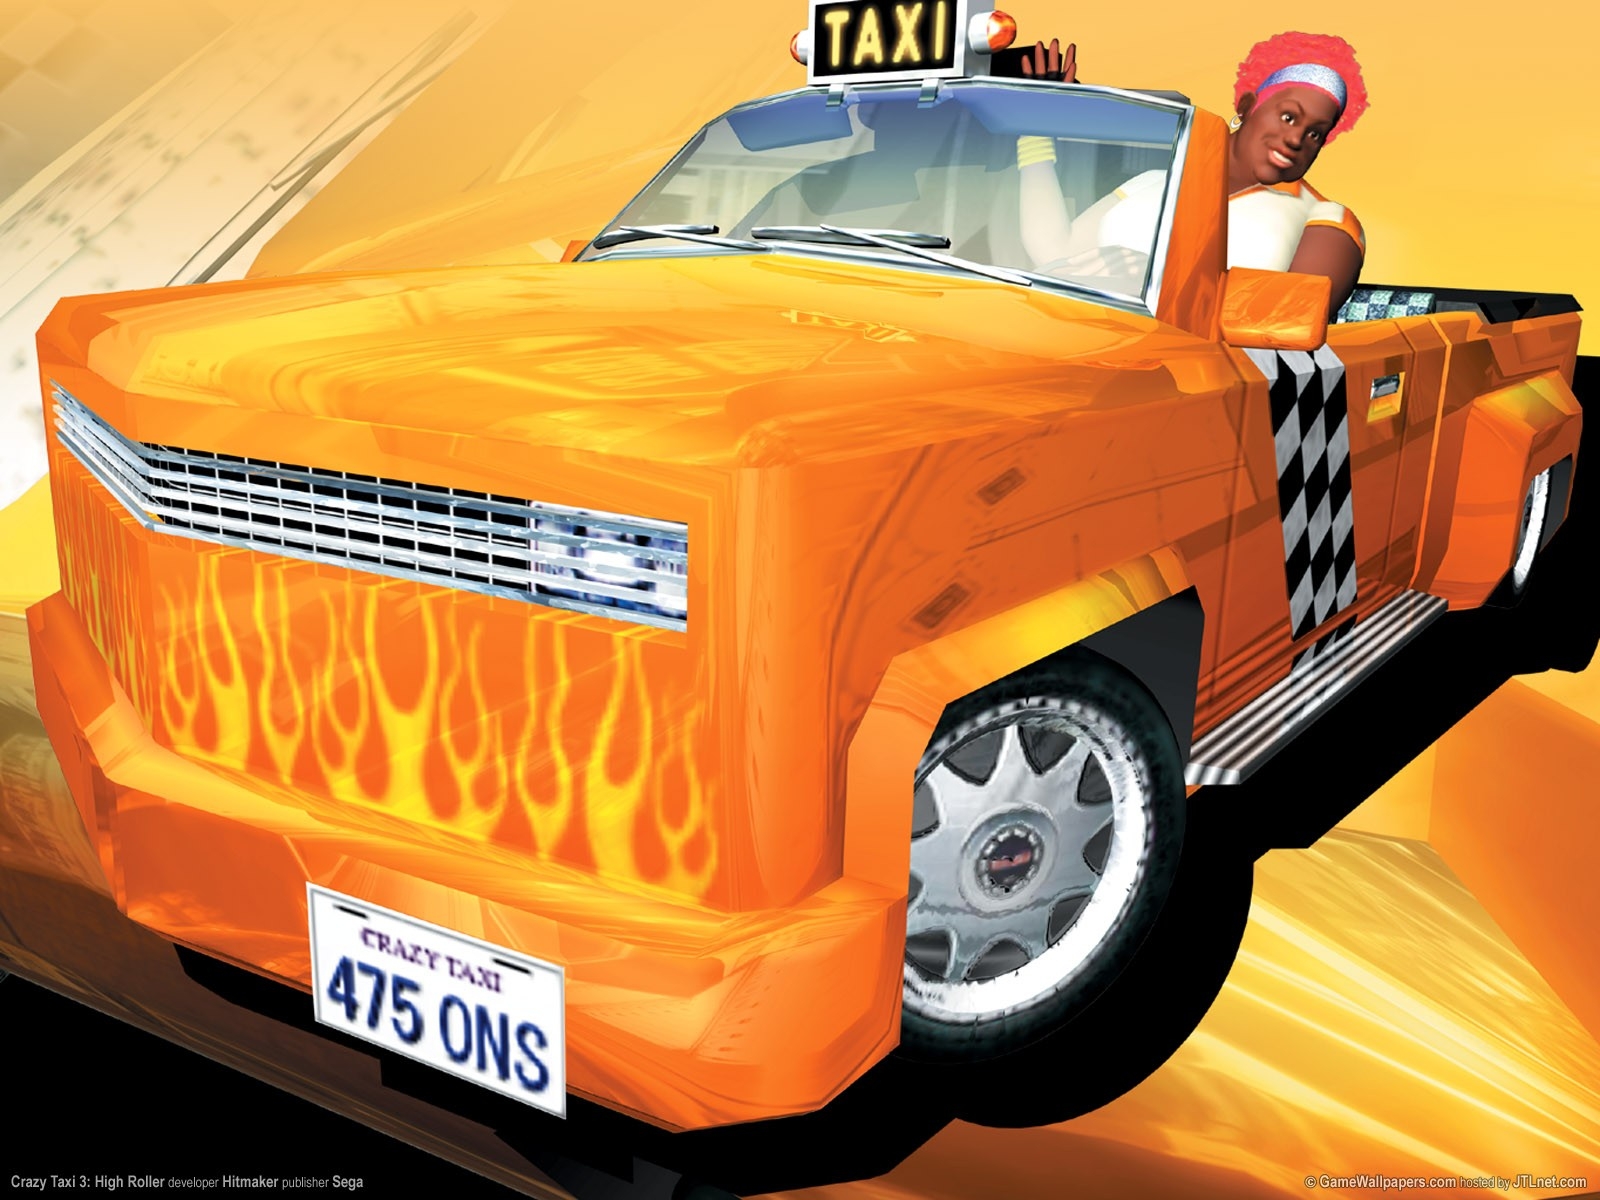 video games crazy taxi 1600x1200 wallpaper High Quality Wallpaper, High Definition Wallpaper